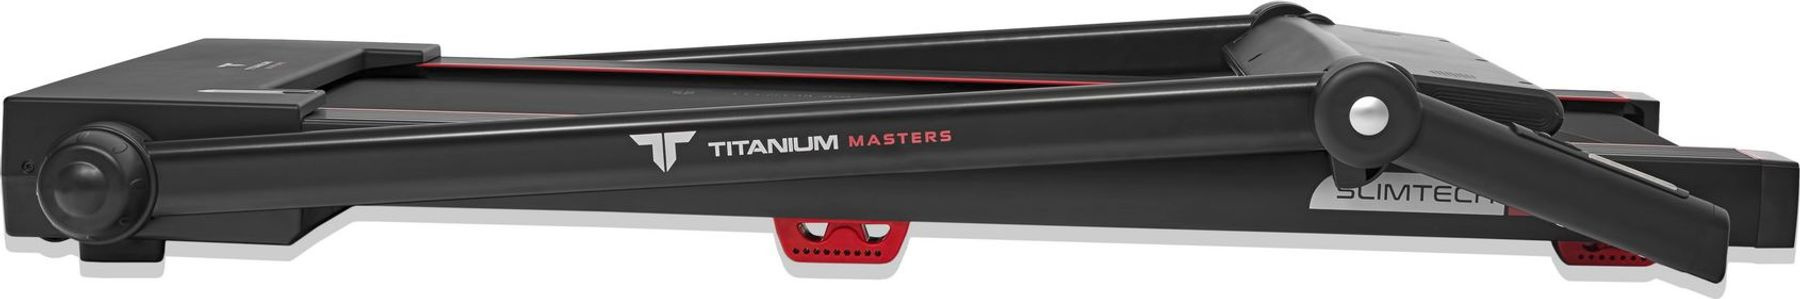 Titanium Masters Slimtech C250 макс. вес пользователя, кг - 120